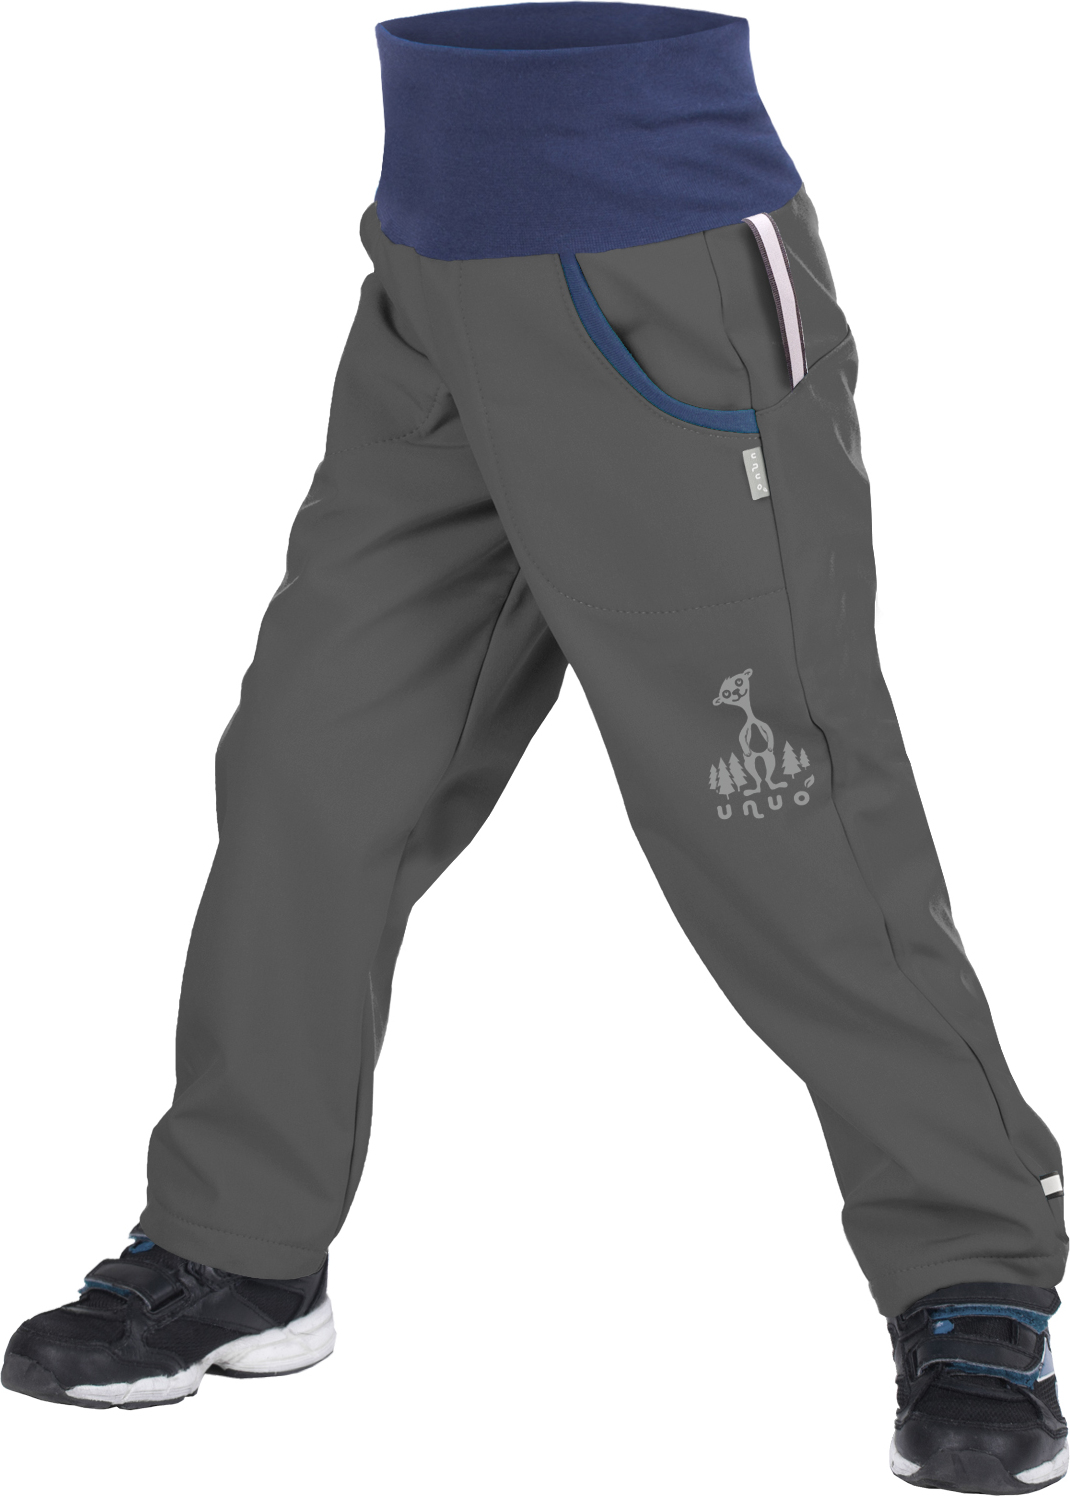 Dětské softshellové kalhoty UNUO s fleecem Antracitové + reflexní obrázek Evžen (Softshell kids trousers) Velikost: 98/104